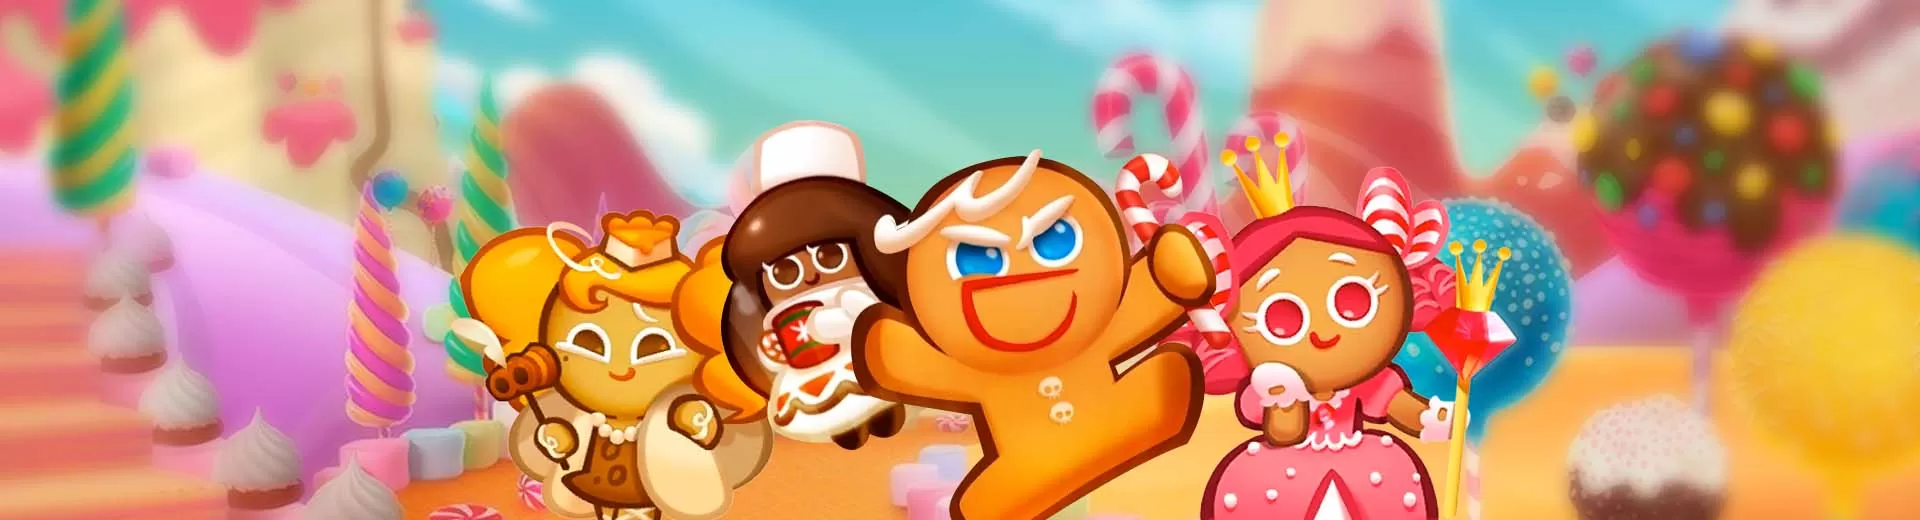 Cookie Run Puzzle Emulator Pc